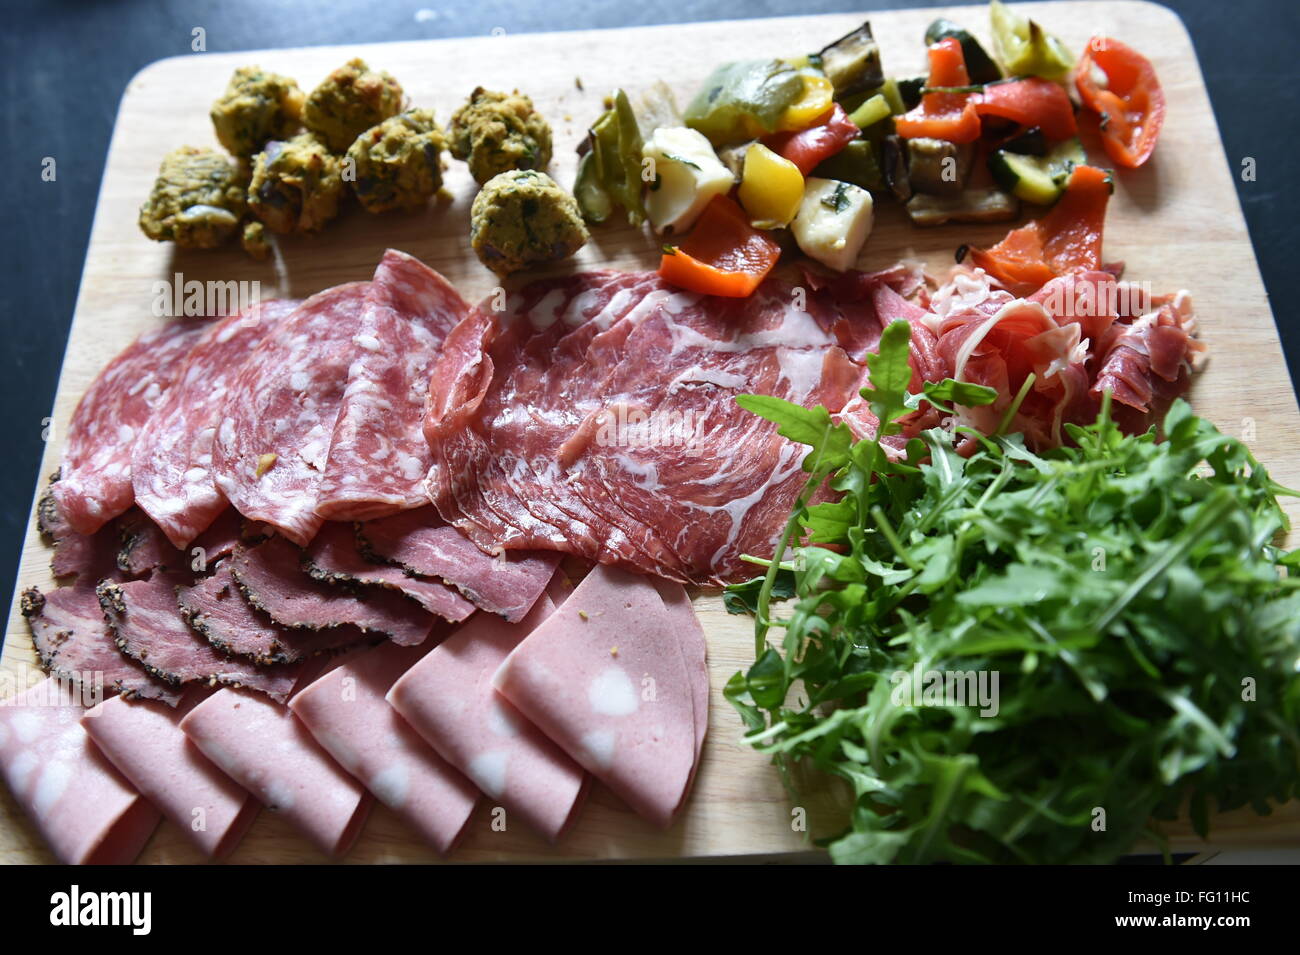 große Platte mit Deli Essen - Schinken, Chorizo, Falafel, Salat auf ein Hochzeitsmahl. Stockfoto